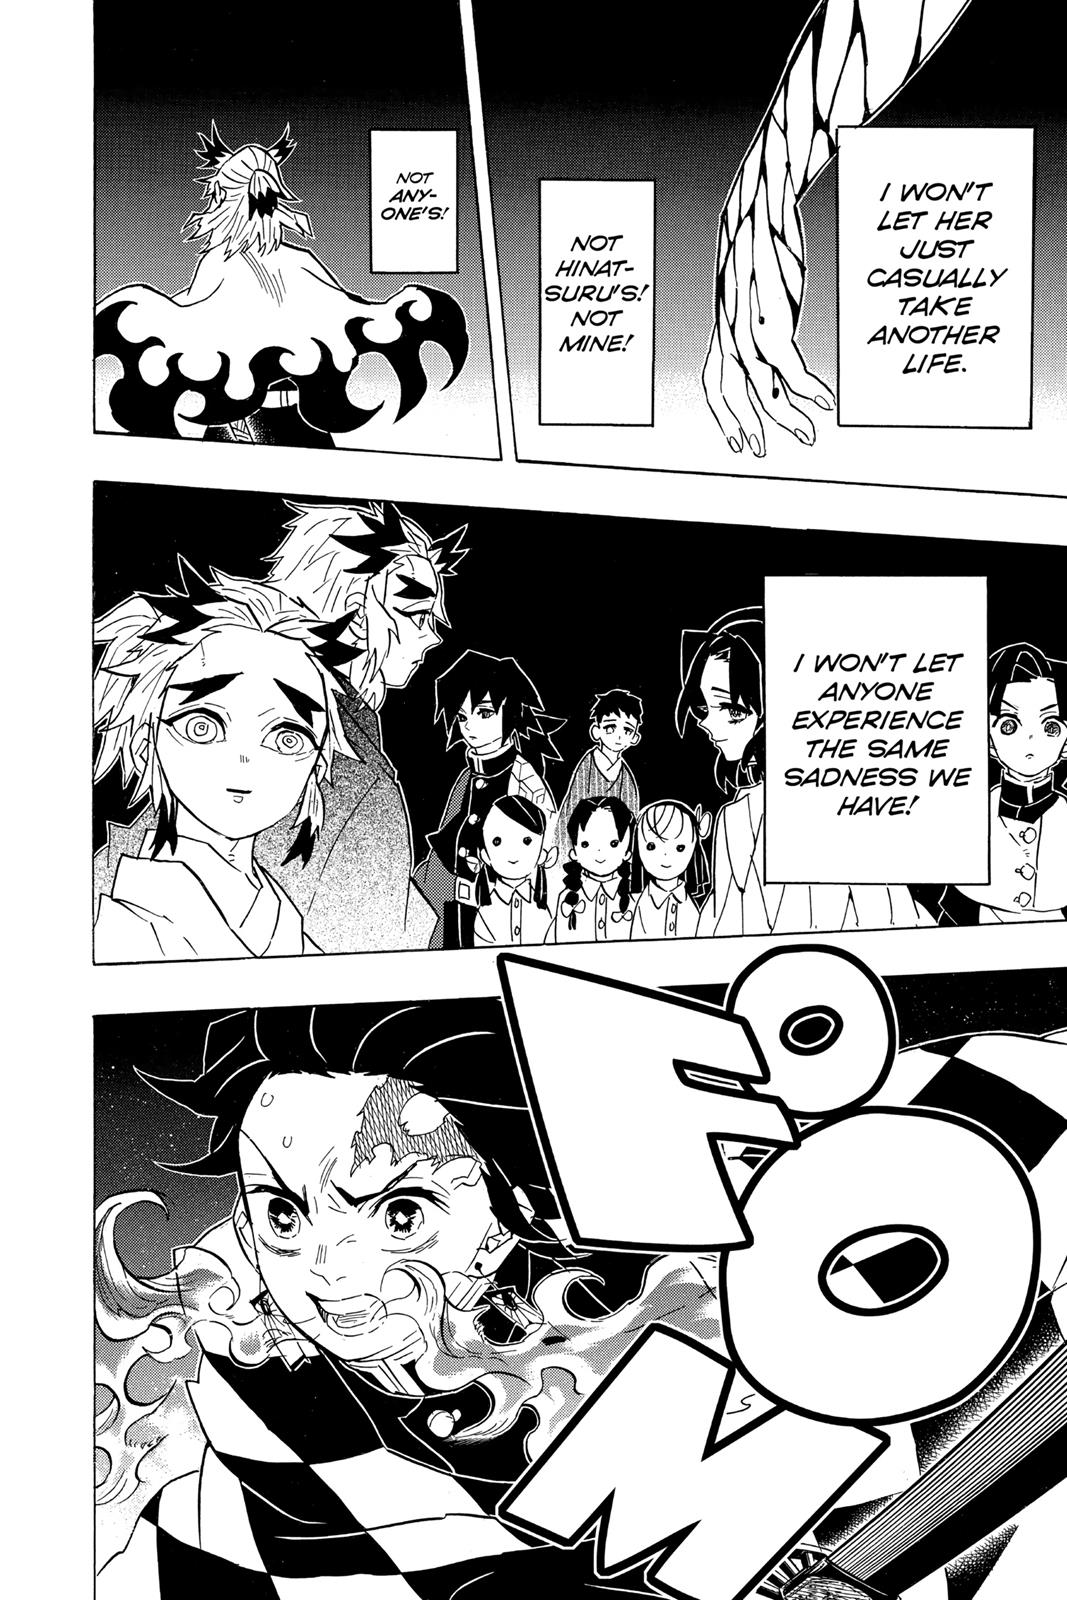 Demon Slayer Manga Manga Chapter - 78 - image 10